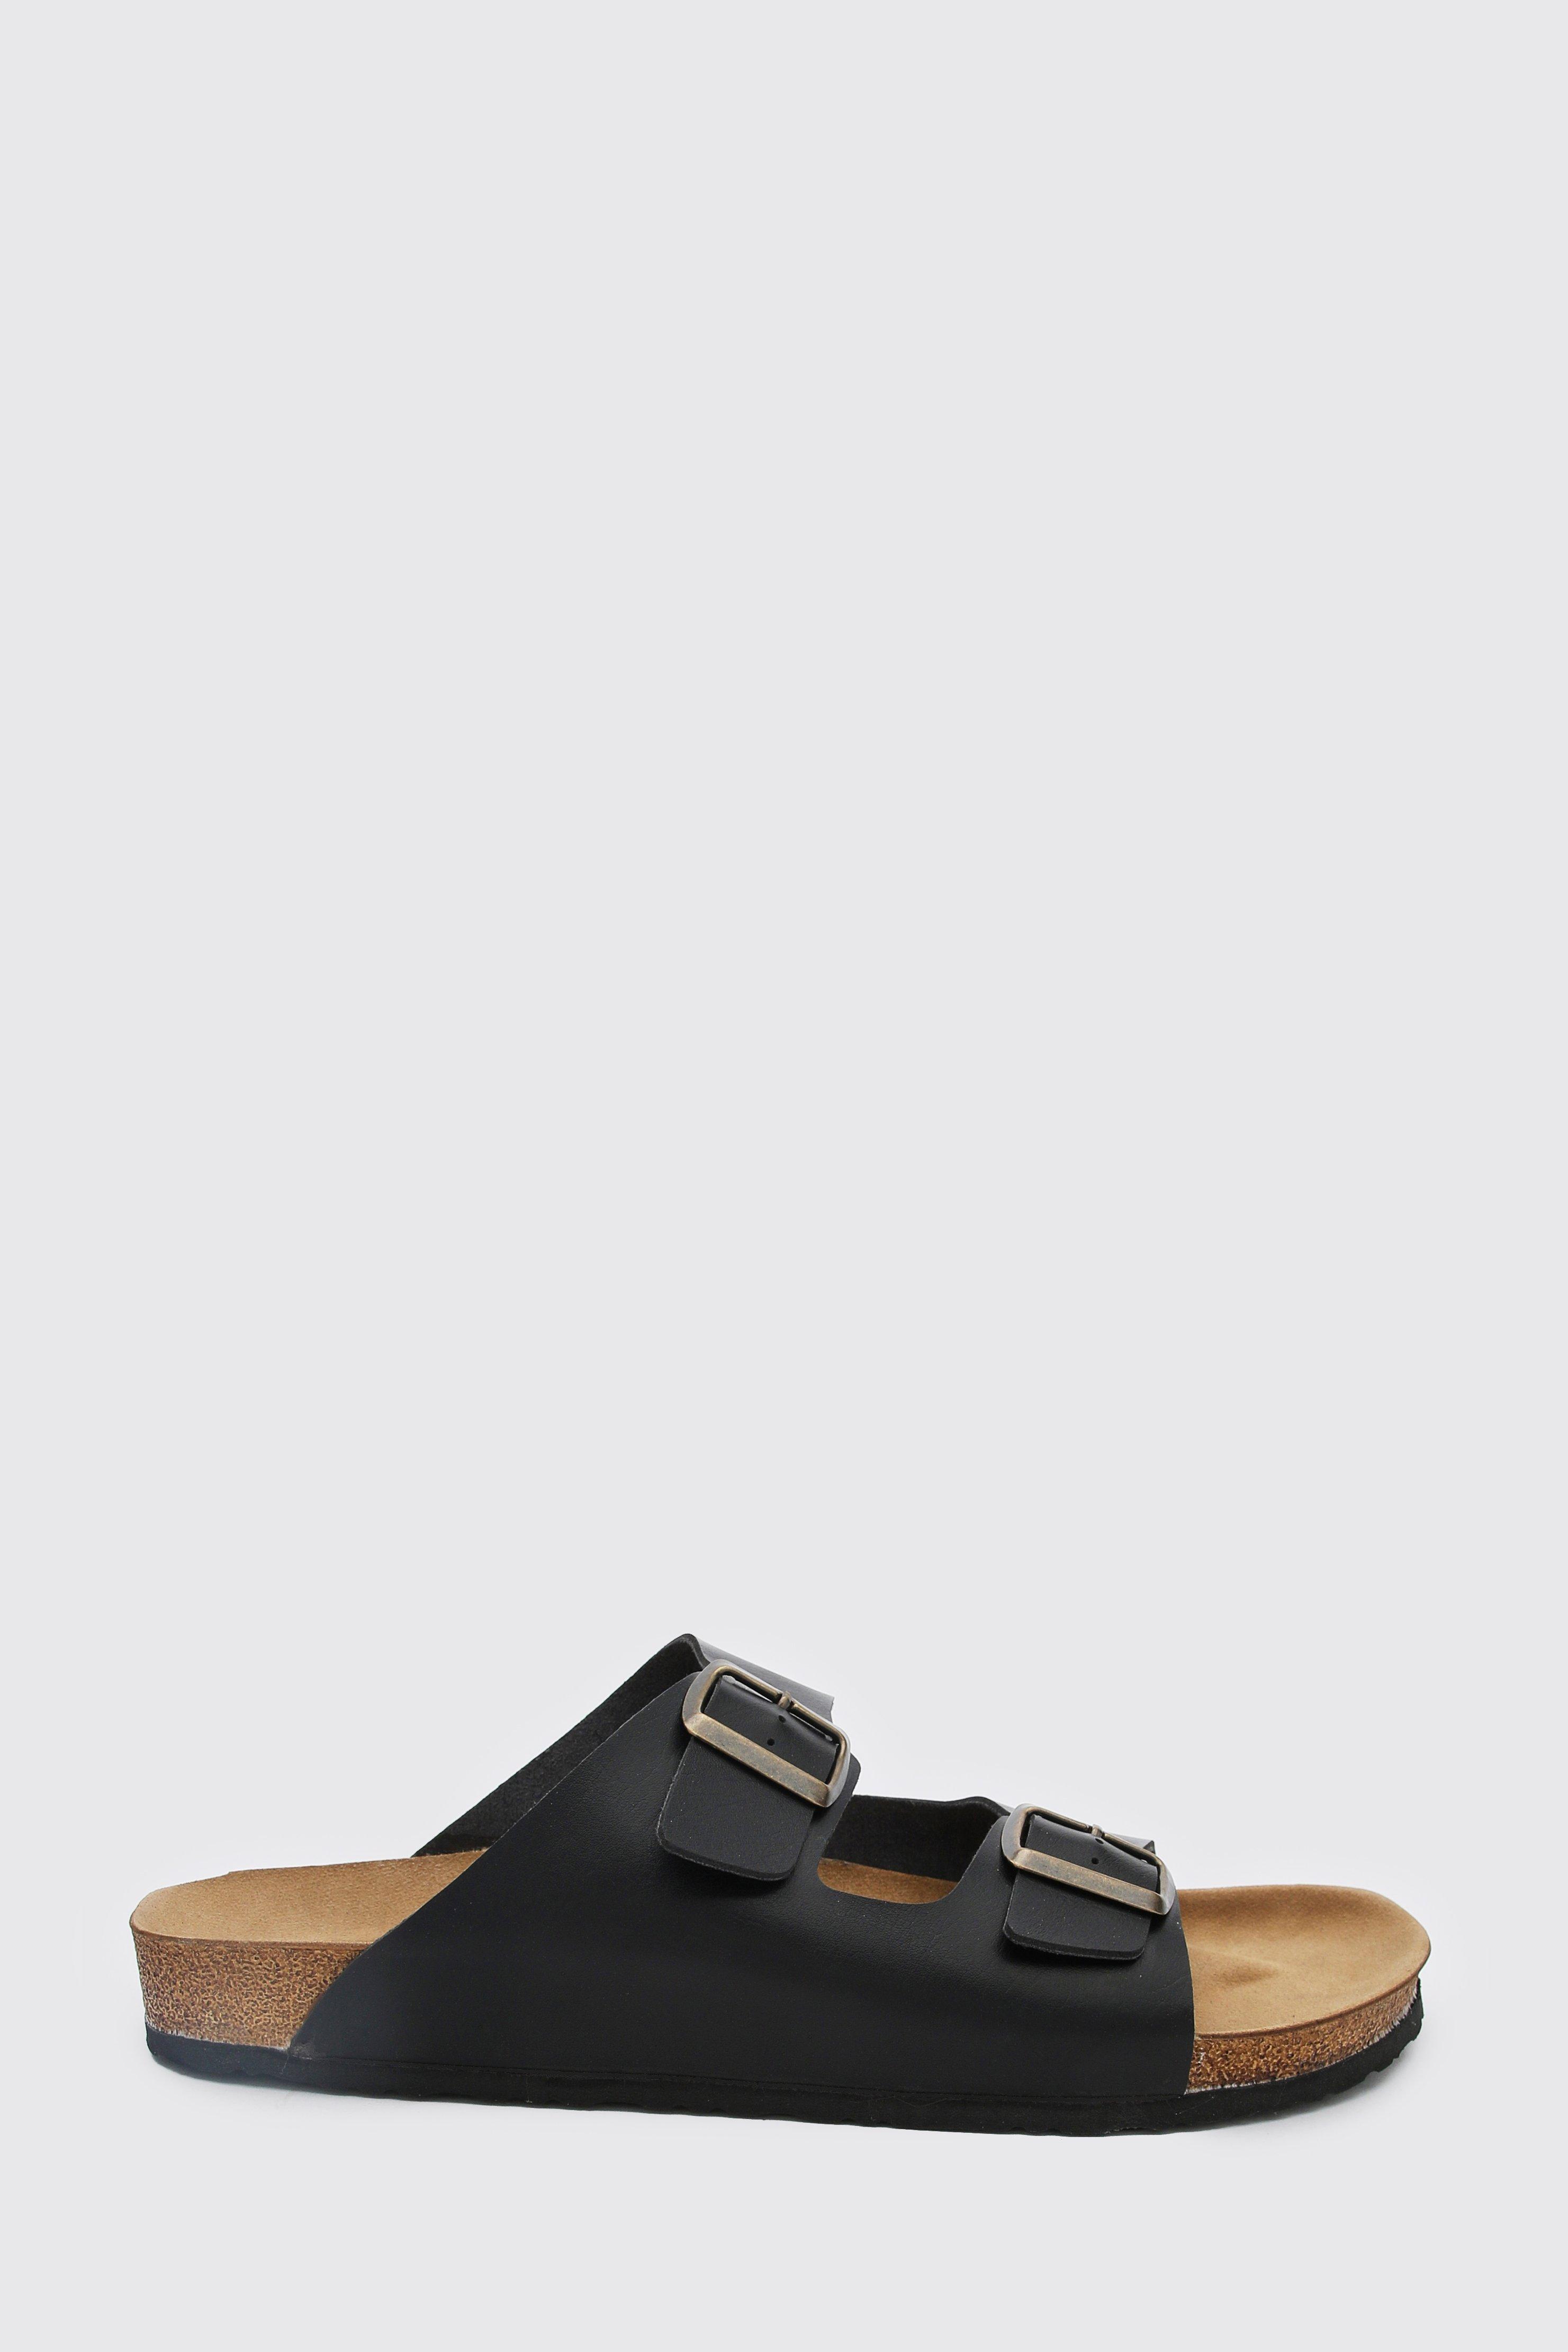 black double buckle sandals